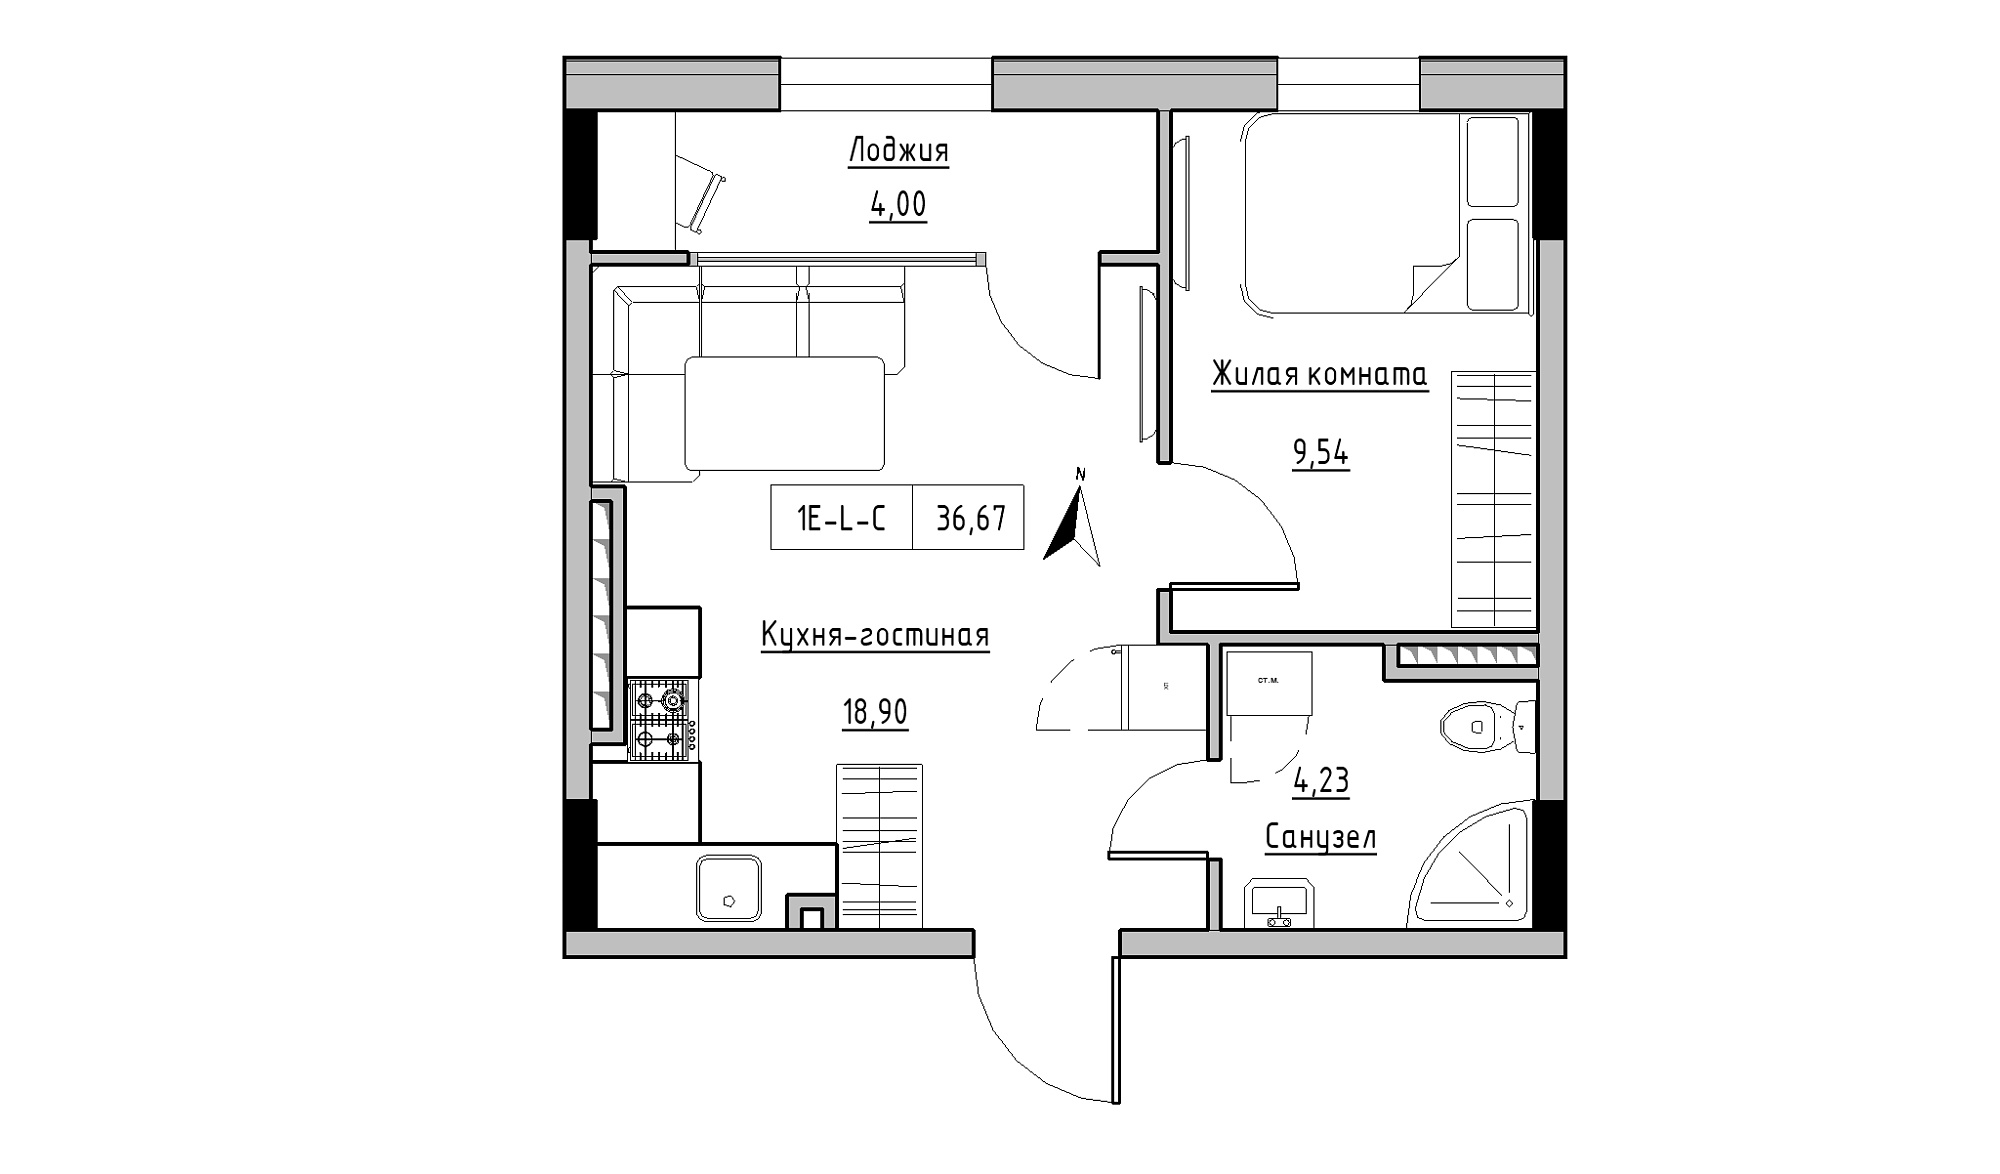 Планировка 1-к квартира площей 36.67м2, KS-025-05/0008.